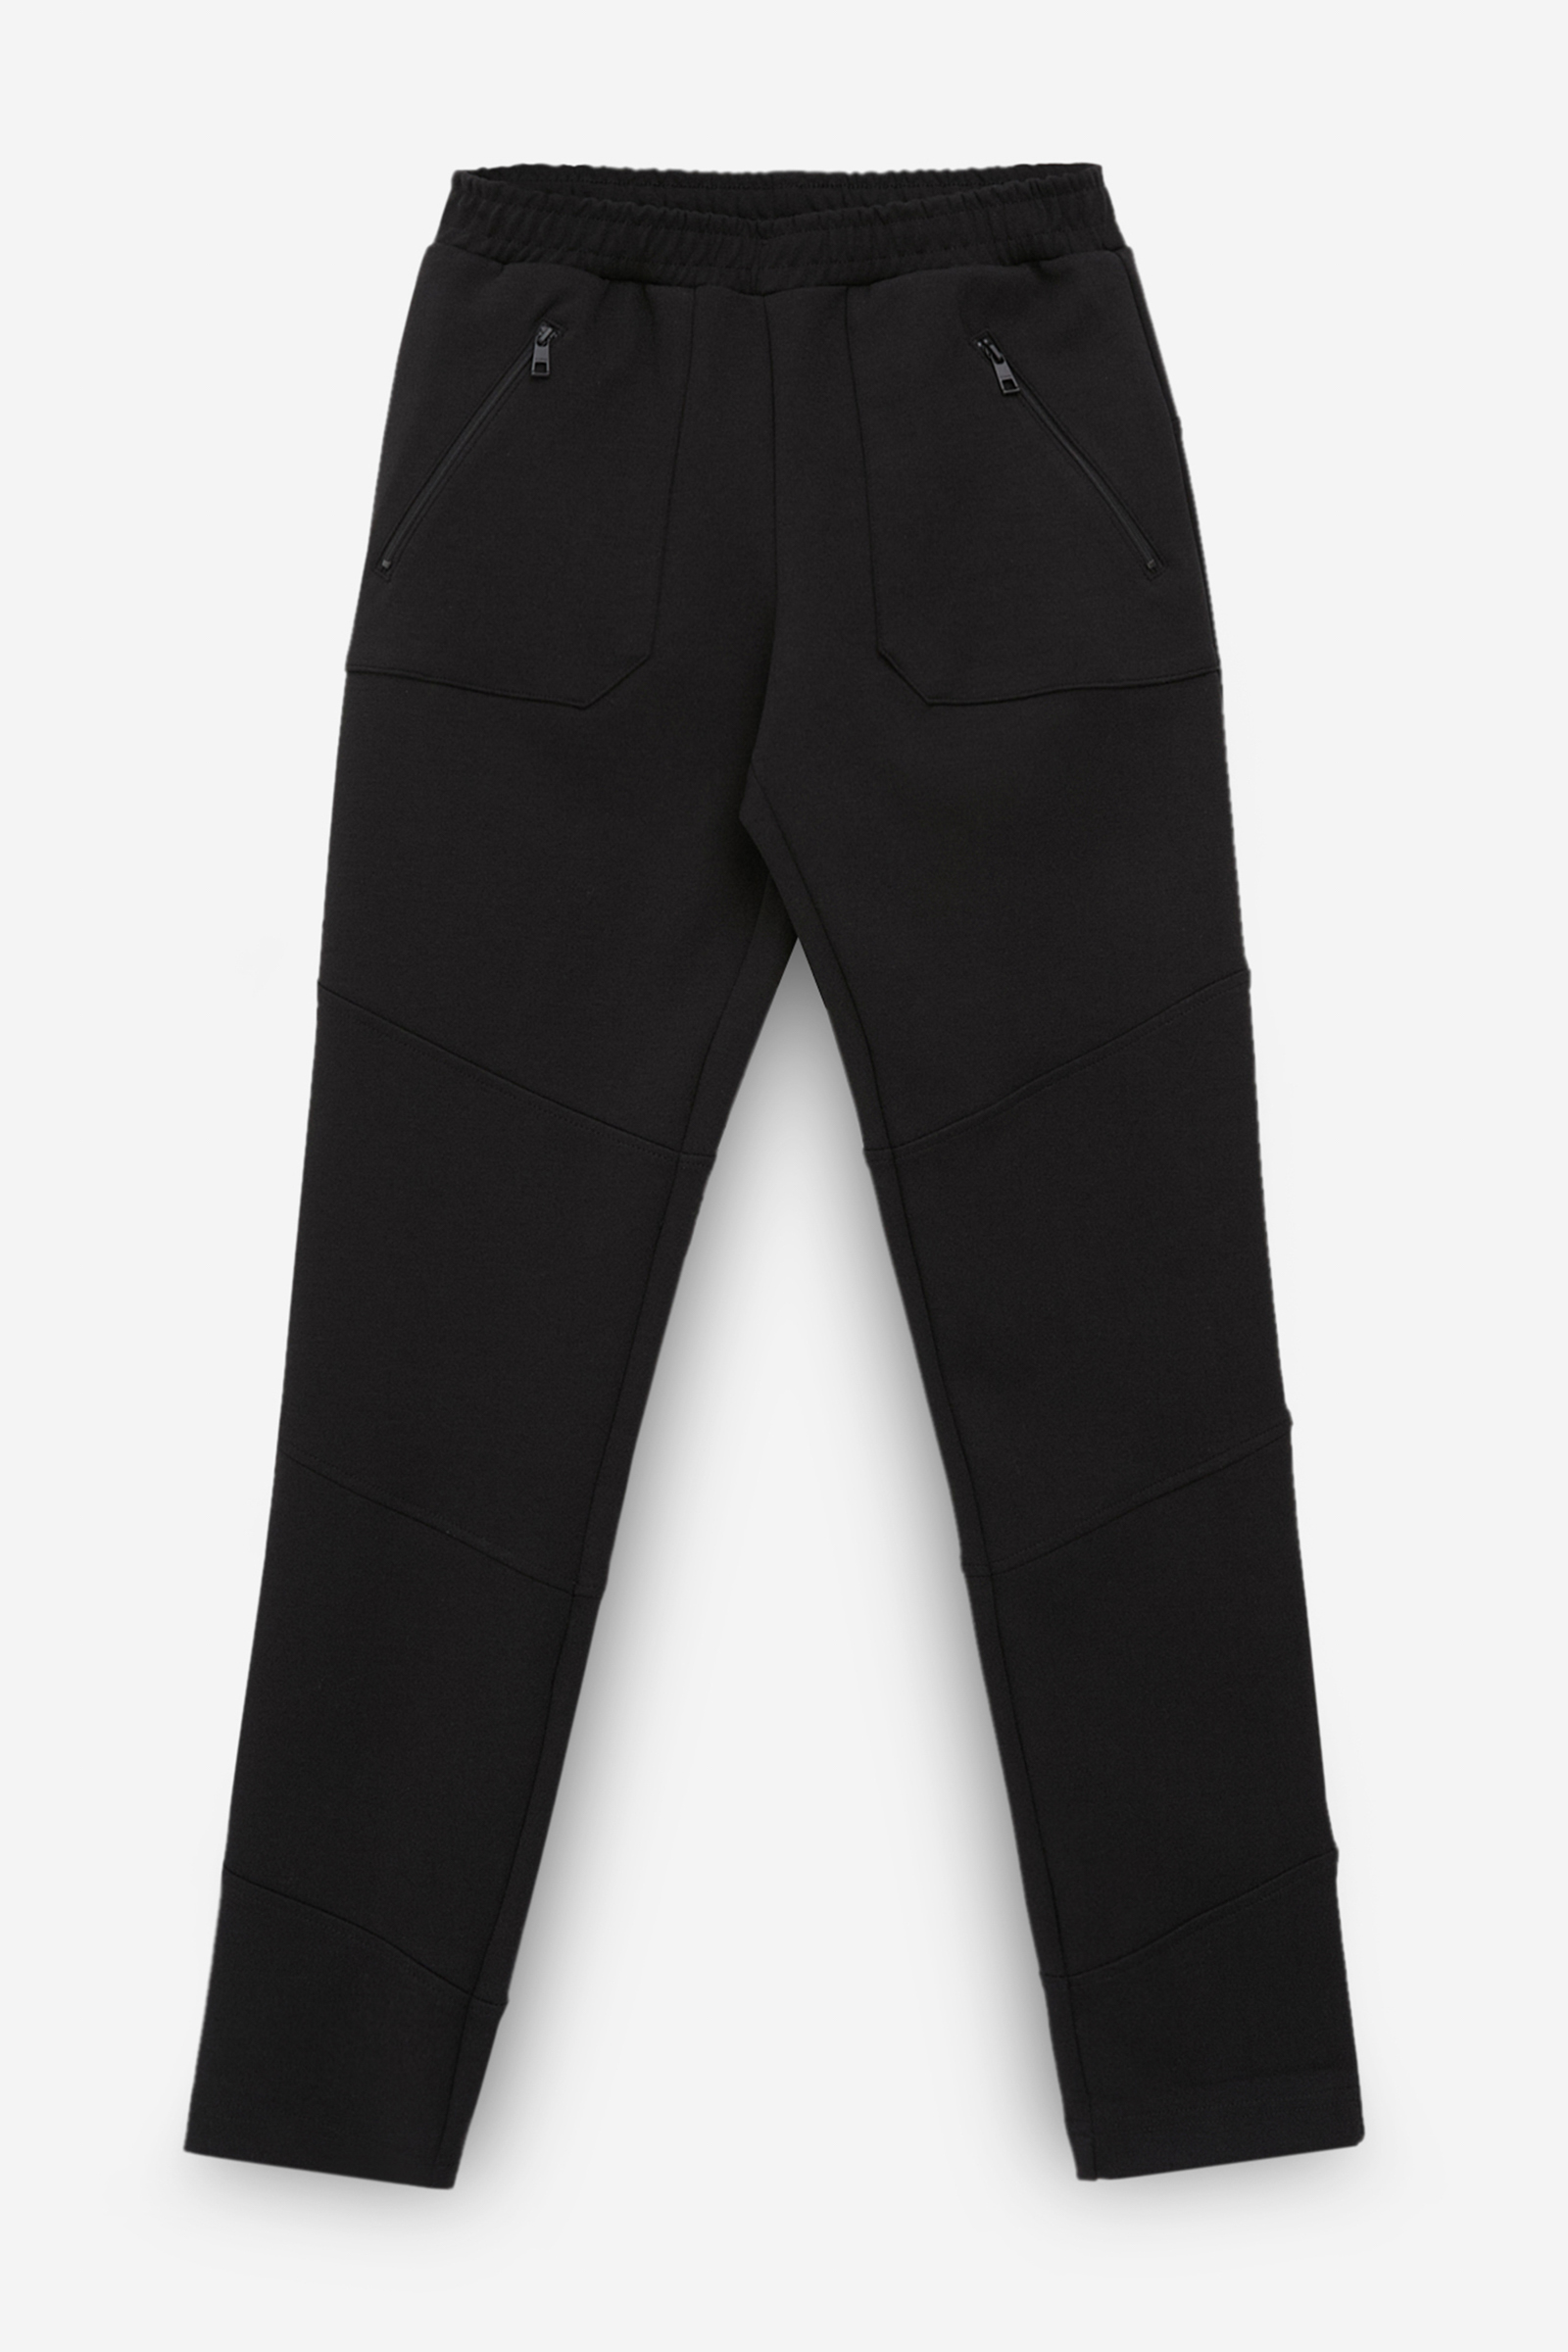 

Спортивные брюки женские Finn Flare FBC13075 черные S, FBC13075